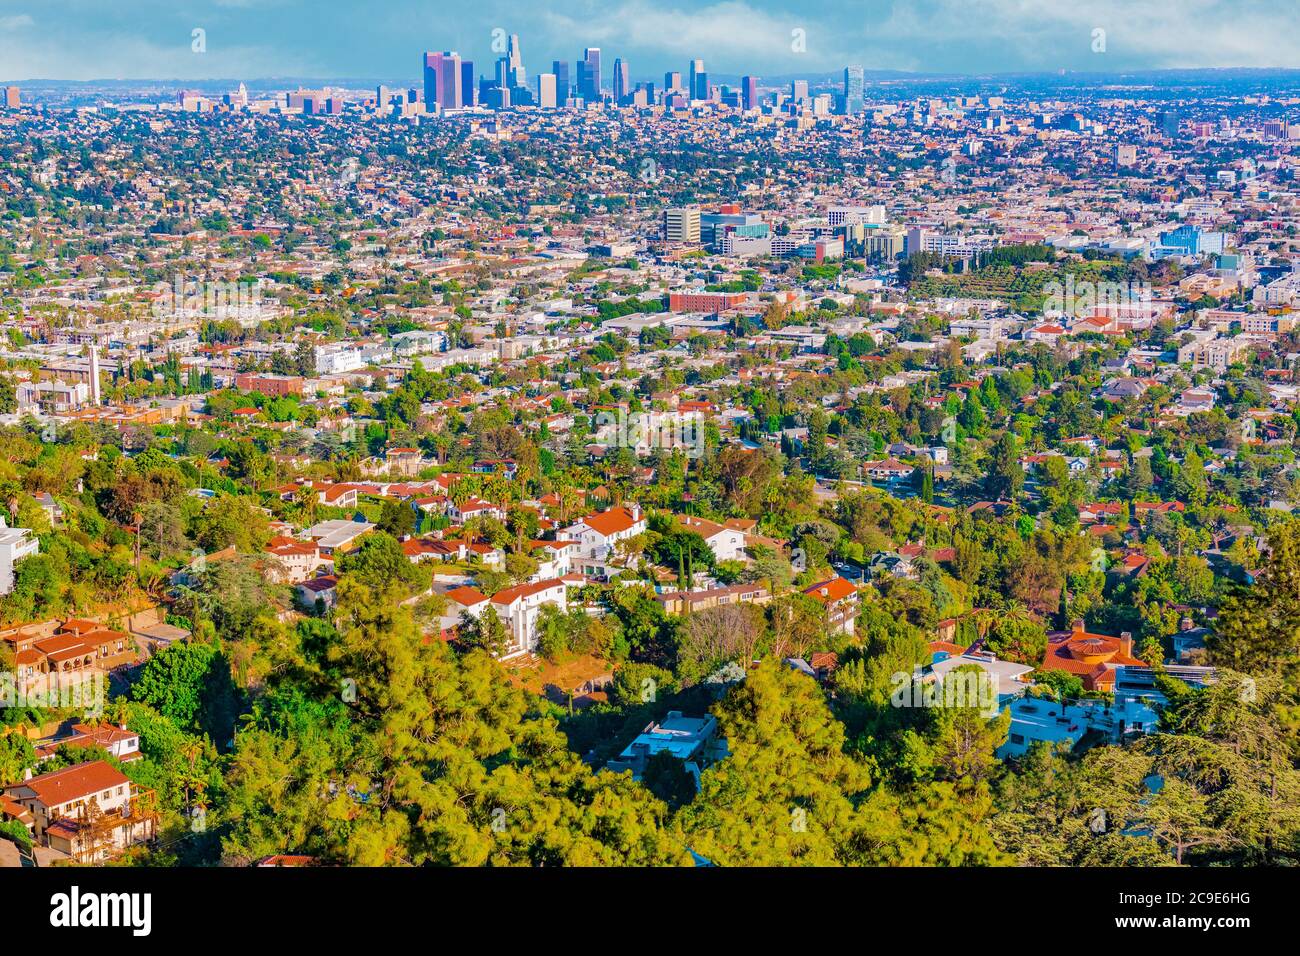 Ein Blick auf den Hügel der städtischen Zersiedelung von Los Angeles zeigt Wolkenkratzer in der Ferne und Häuser auf Hügeln im Vordergrund gebaut. Stockfoto